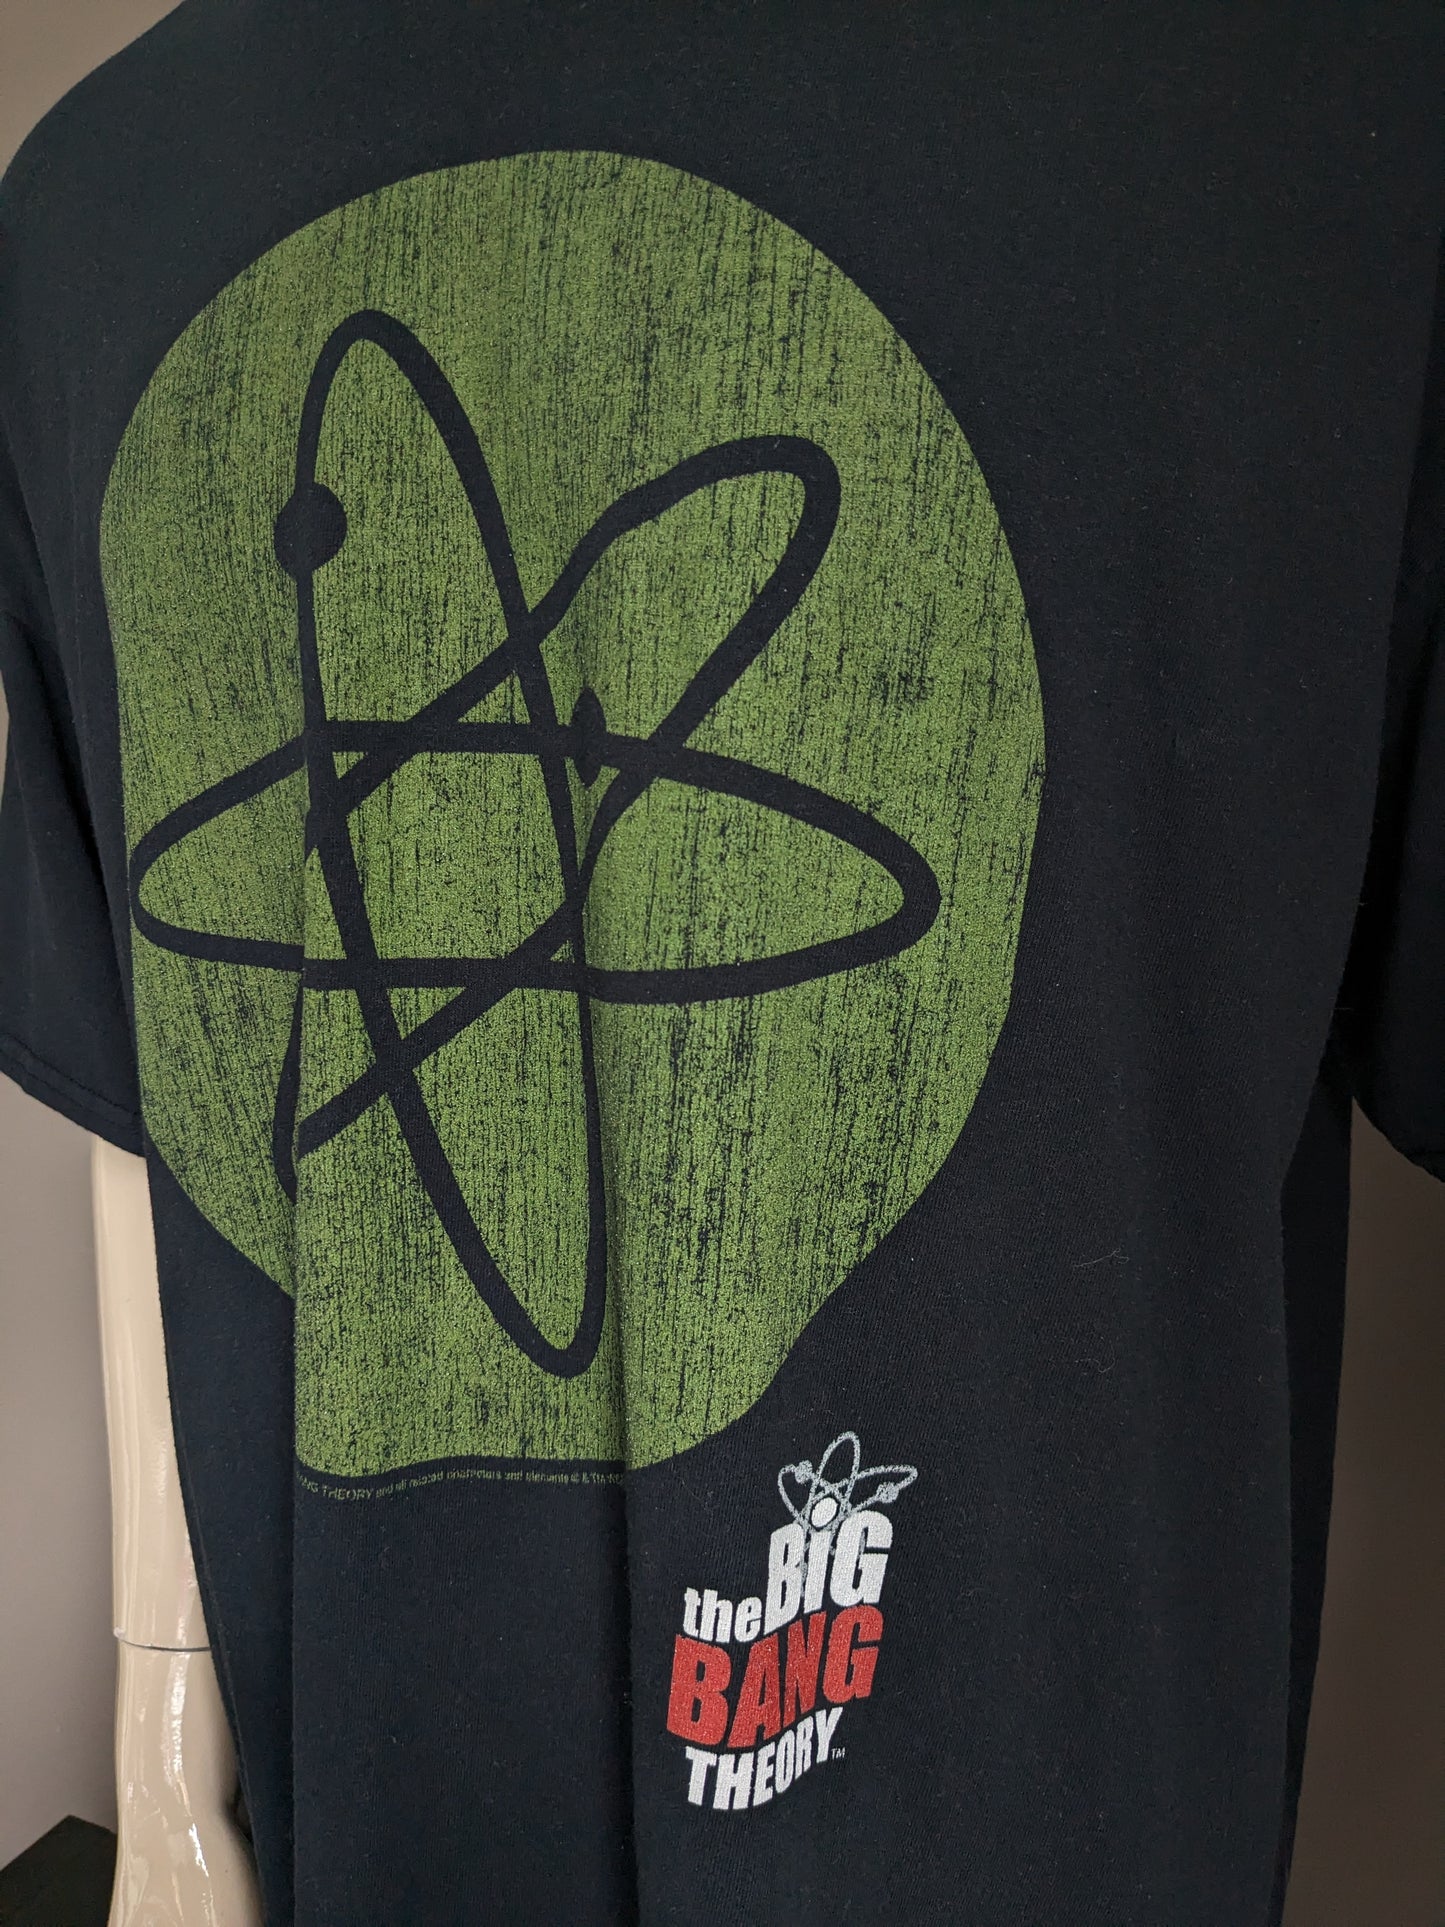 Camisa de culto absoluto "The Big Bang Theory". Negro con impresión. Tamaño 3xl / xxxl.